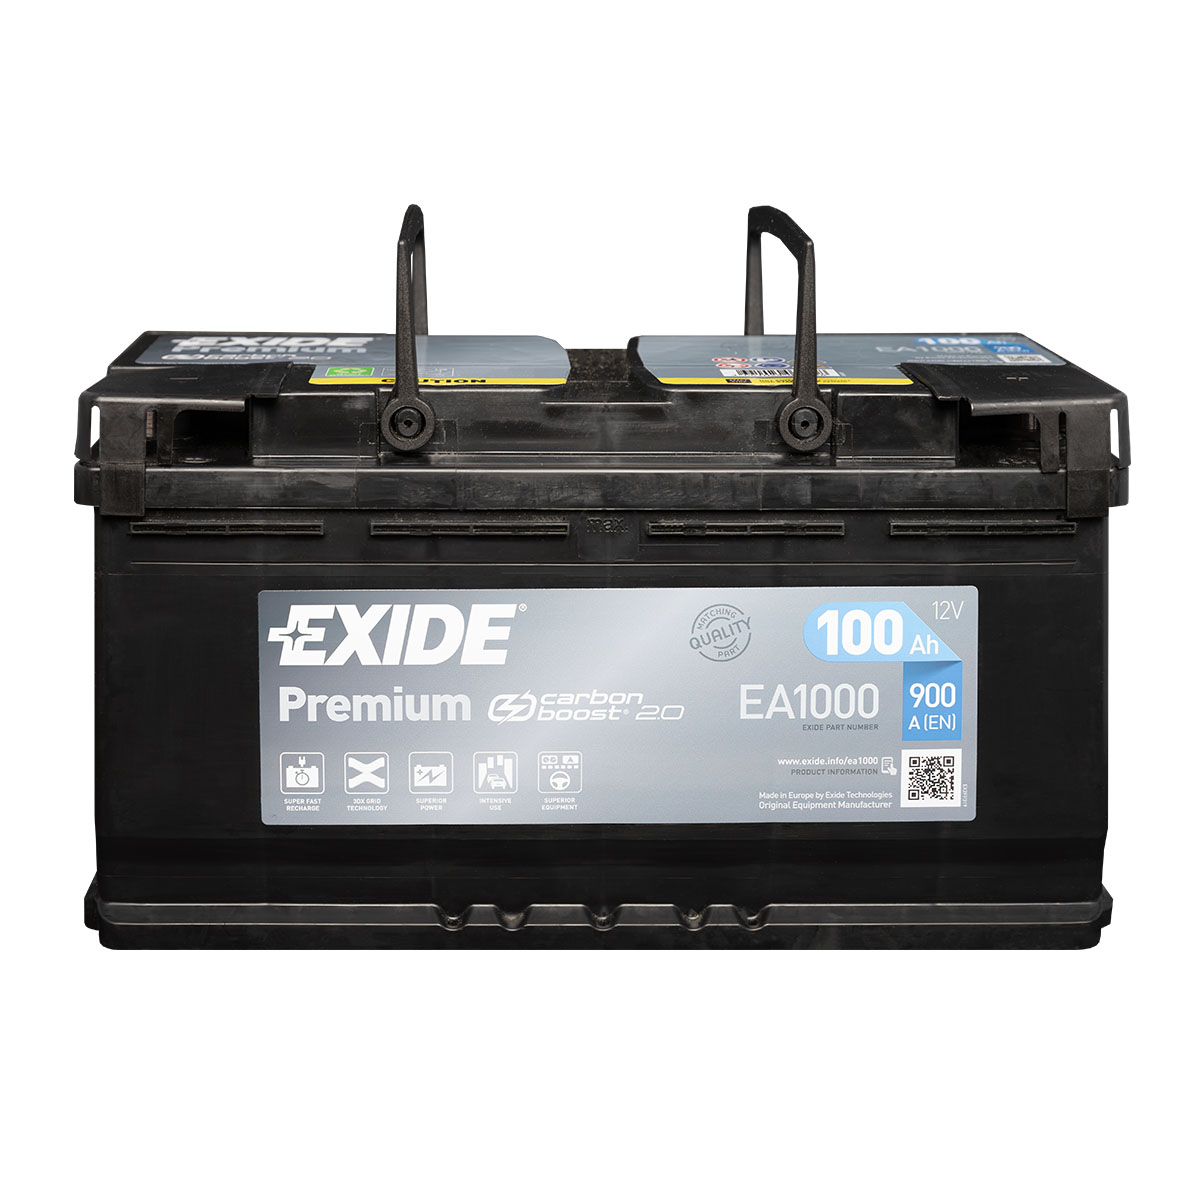 Exide Premium Carbon EA1000 (12 V, 100 Ah, 900 A) - digitec